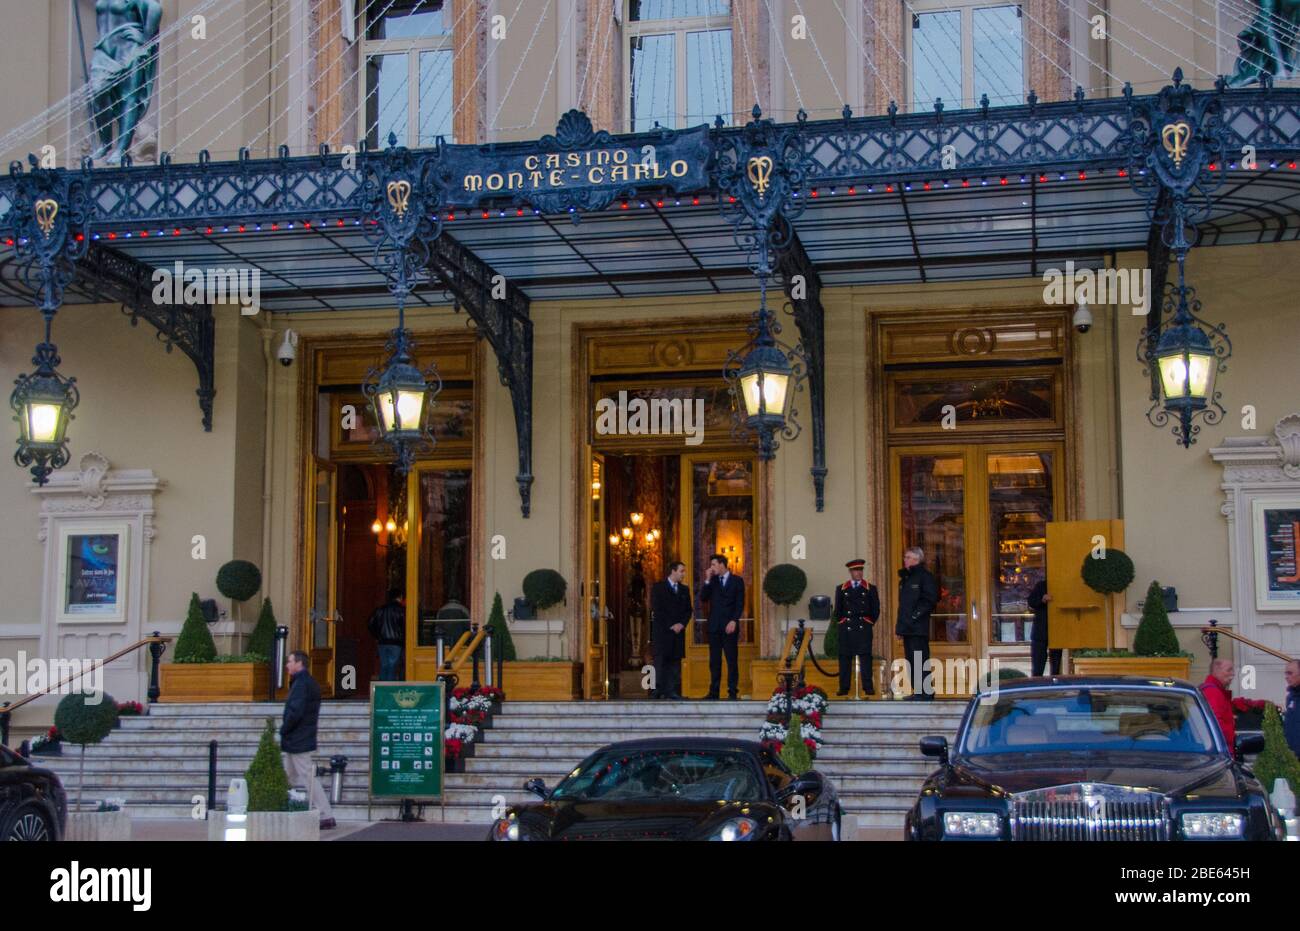 Monte Carlo Casino, Cafe de Paris & Hotel de Paris in Monte Carlo 2013. Stock Photo